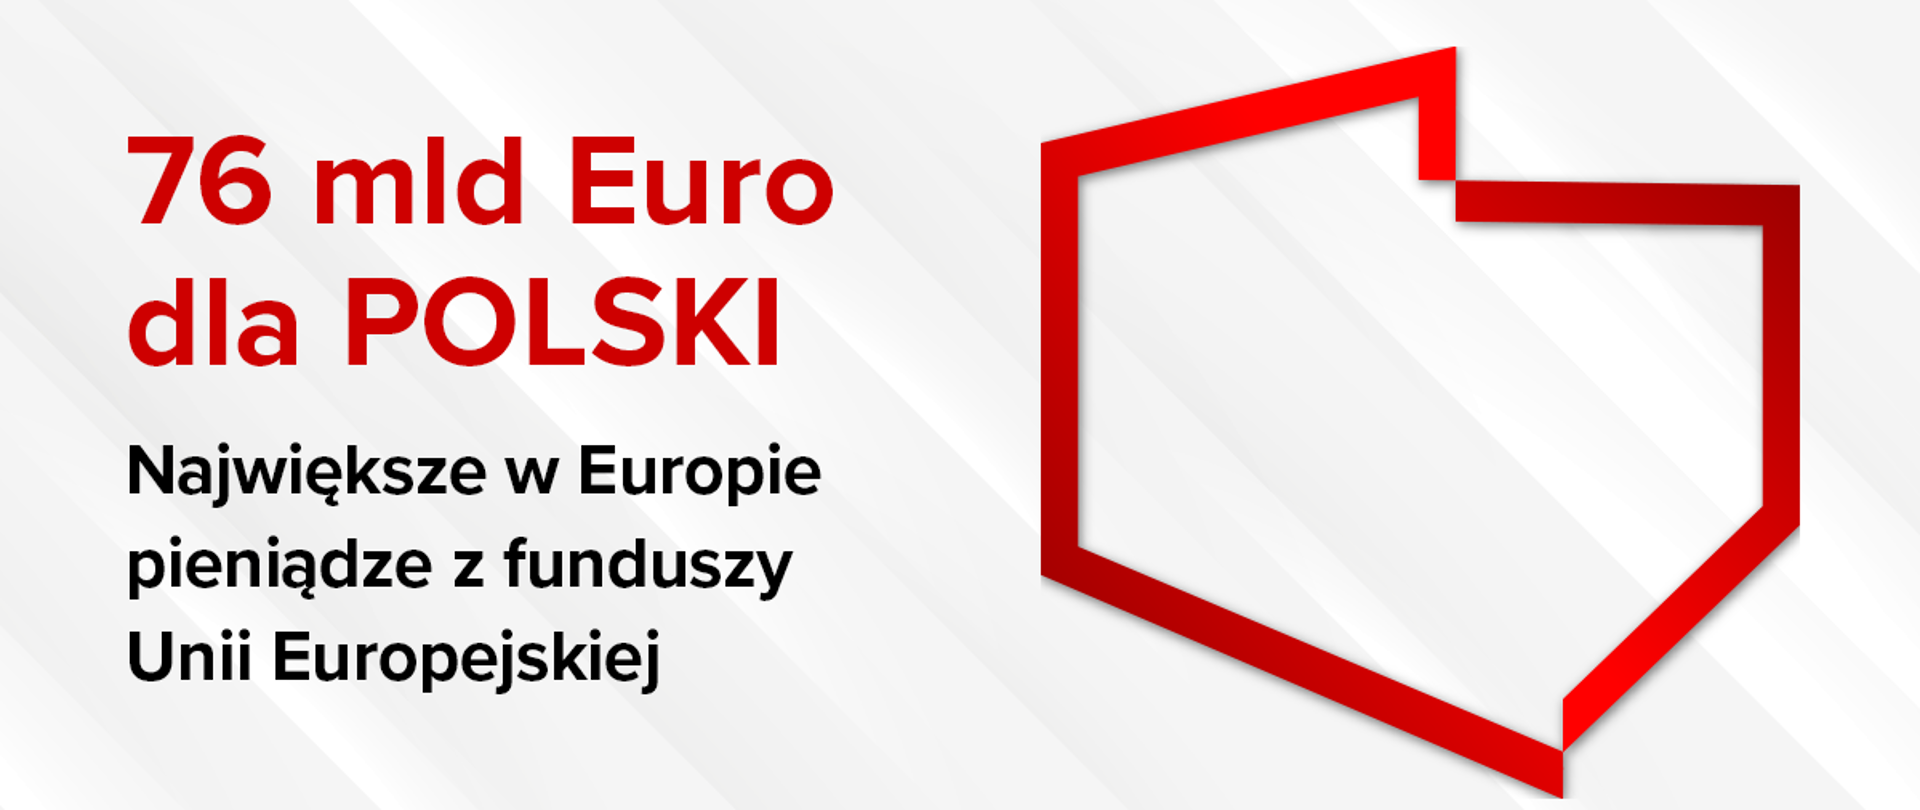 Na grafice kontur Polski i napis "76 mld Euro dla Polski"